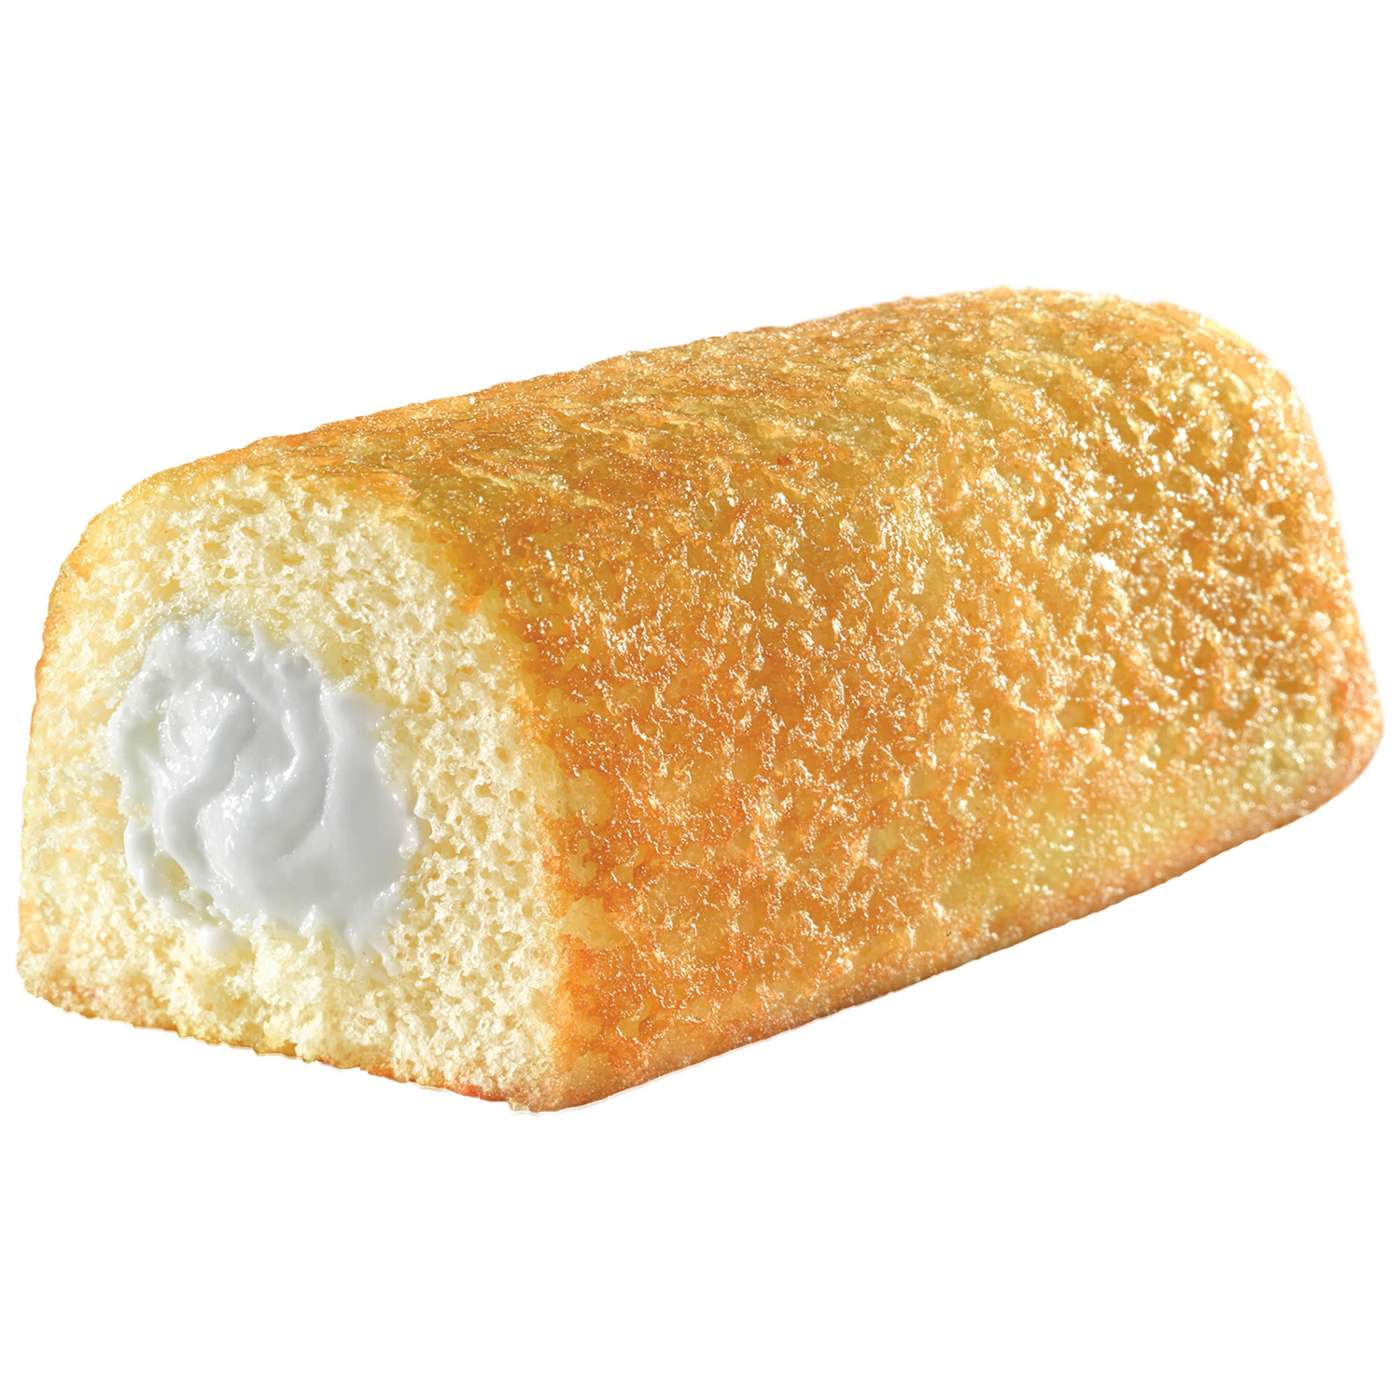 Hostess Twinkies Golden Sponge Cake - Family Pack; image 3 of 4